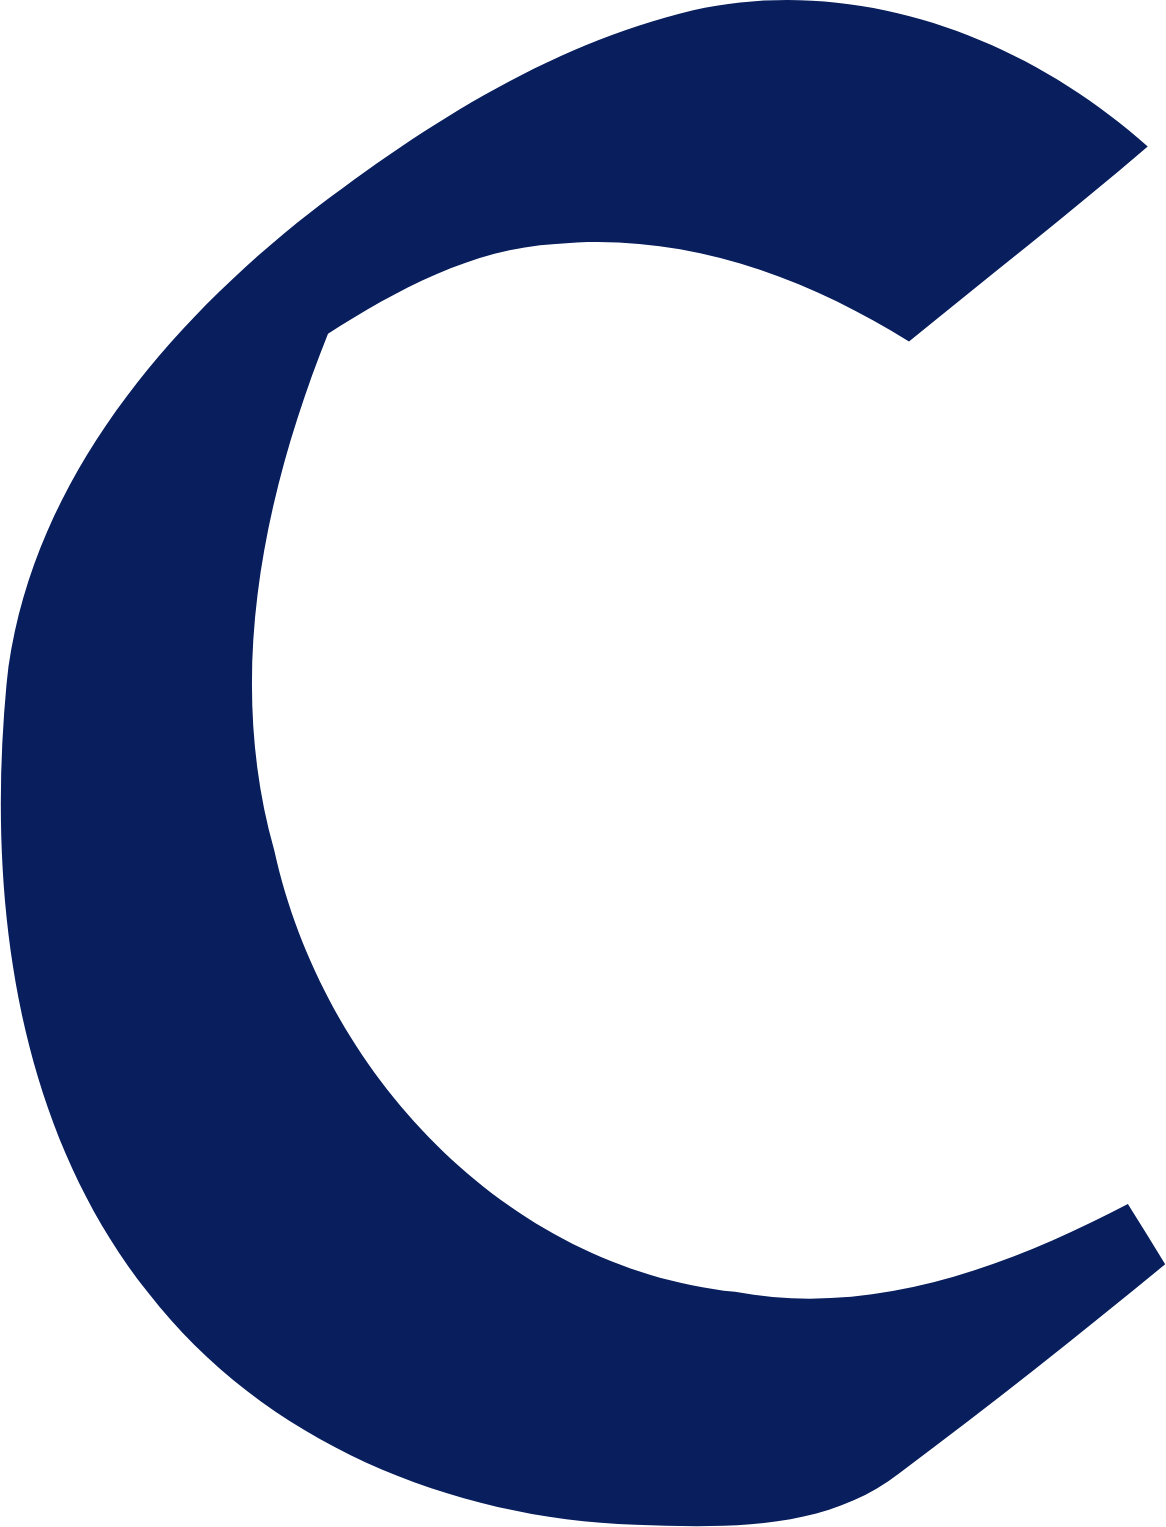 Central Securities logo (transparent PNG)